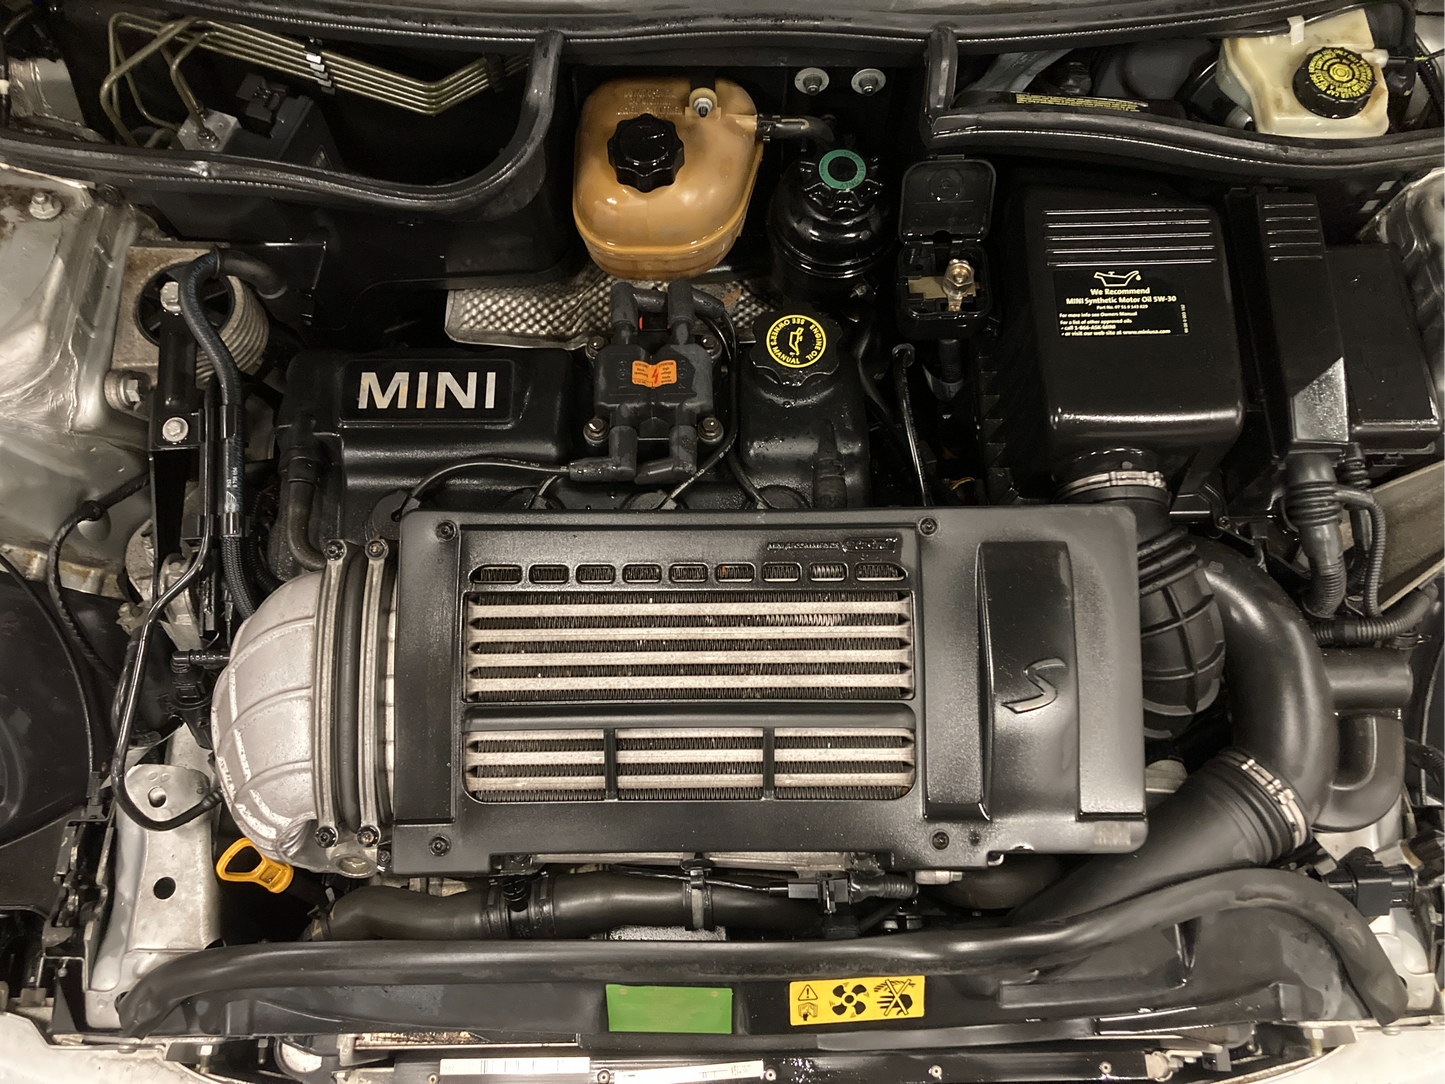 2004 MINI Cooper S, New Parts Car (April 2023) Stk #374